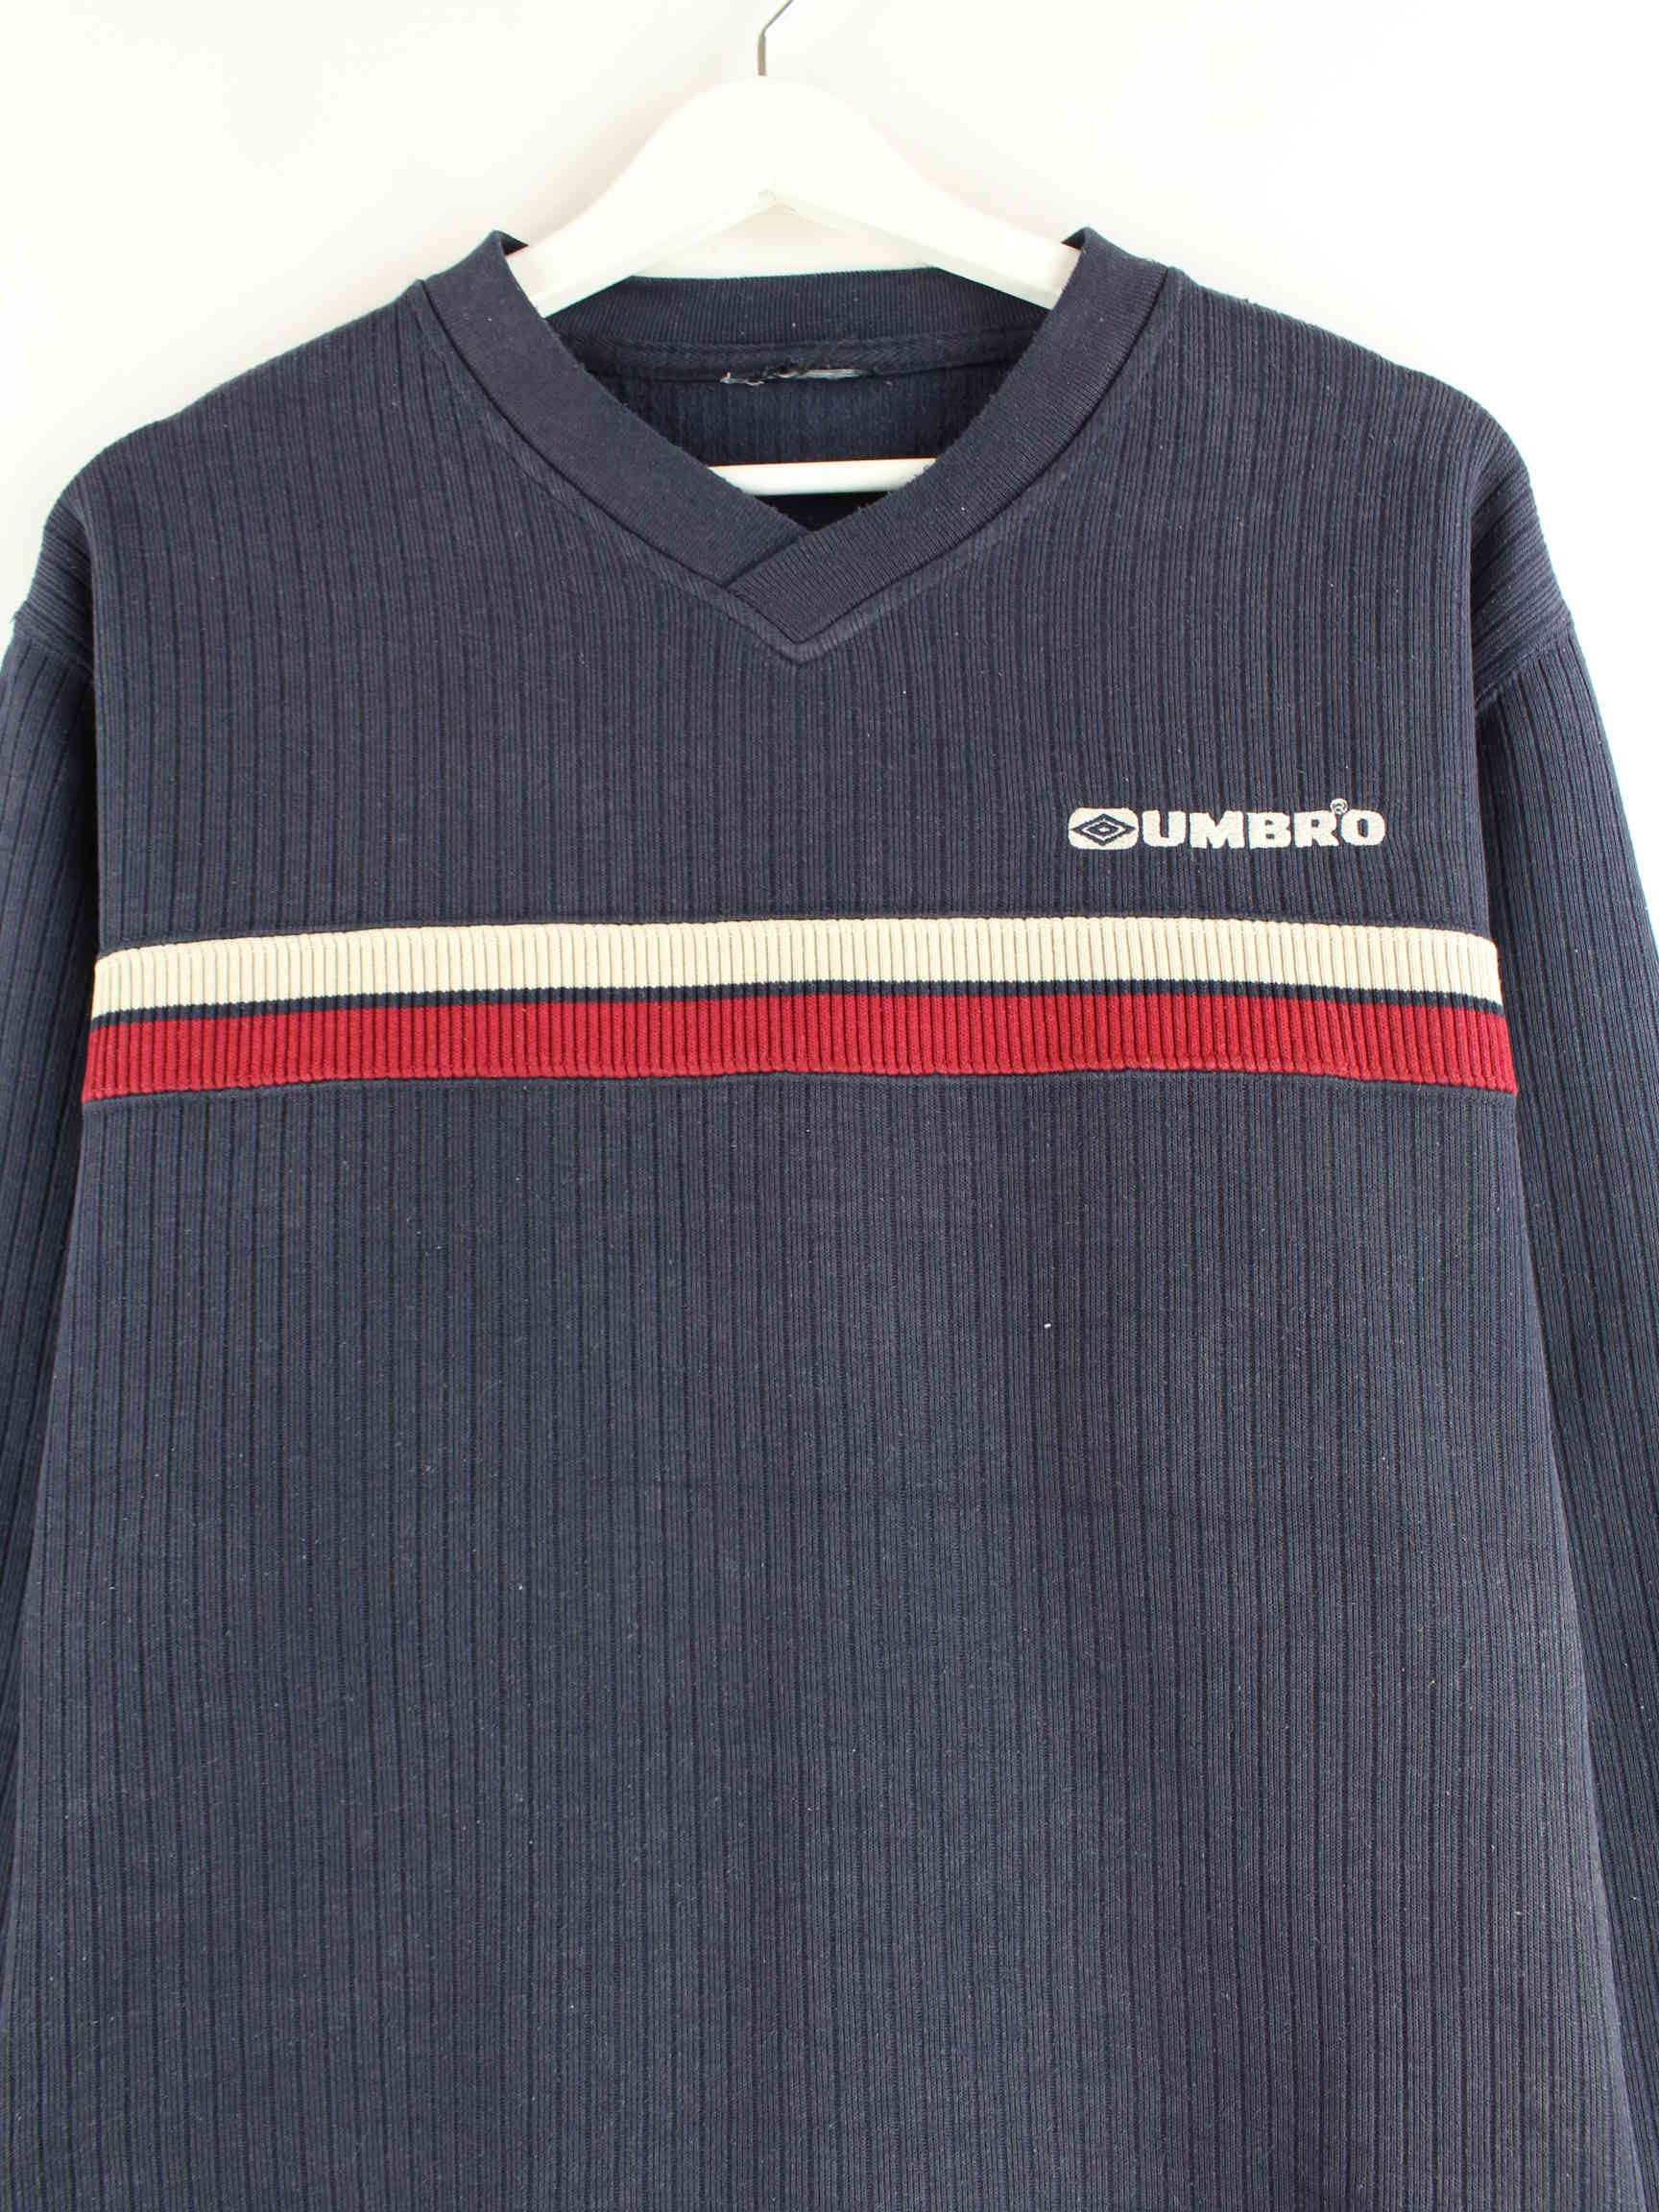 Umbro 90s Vintage Embroidered V-Neck Sweater Blau M (detail image 1)